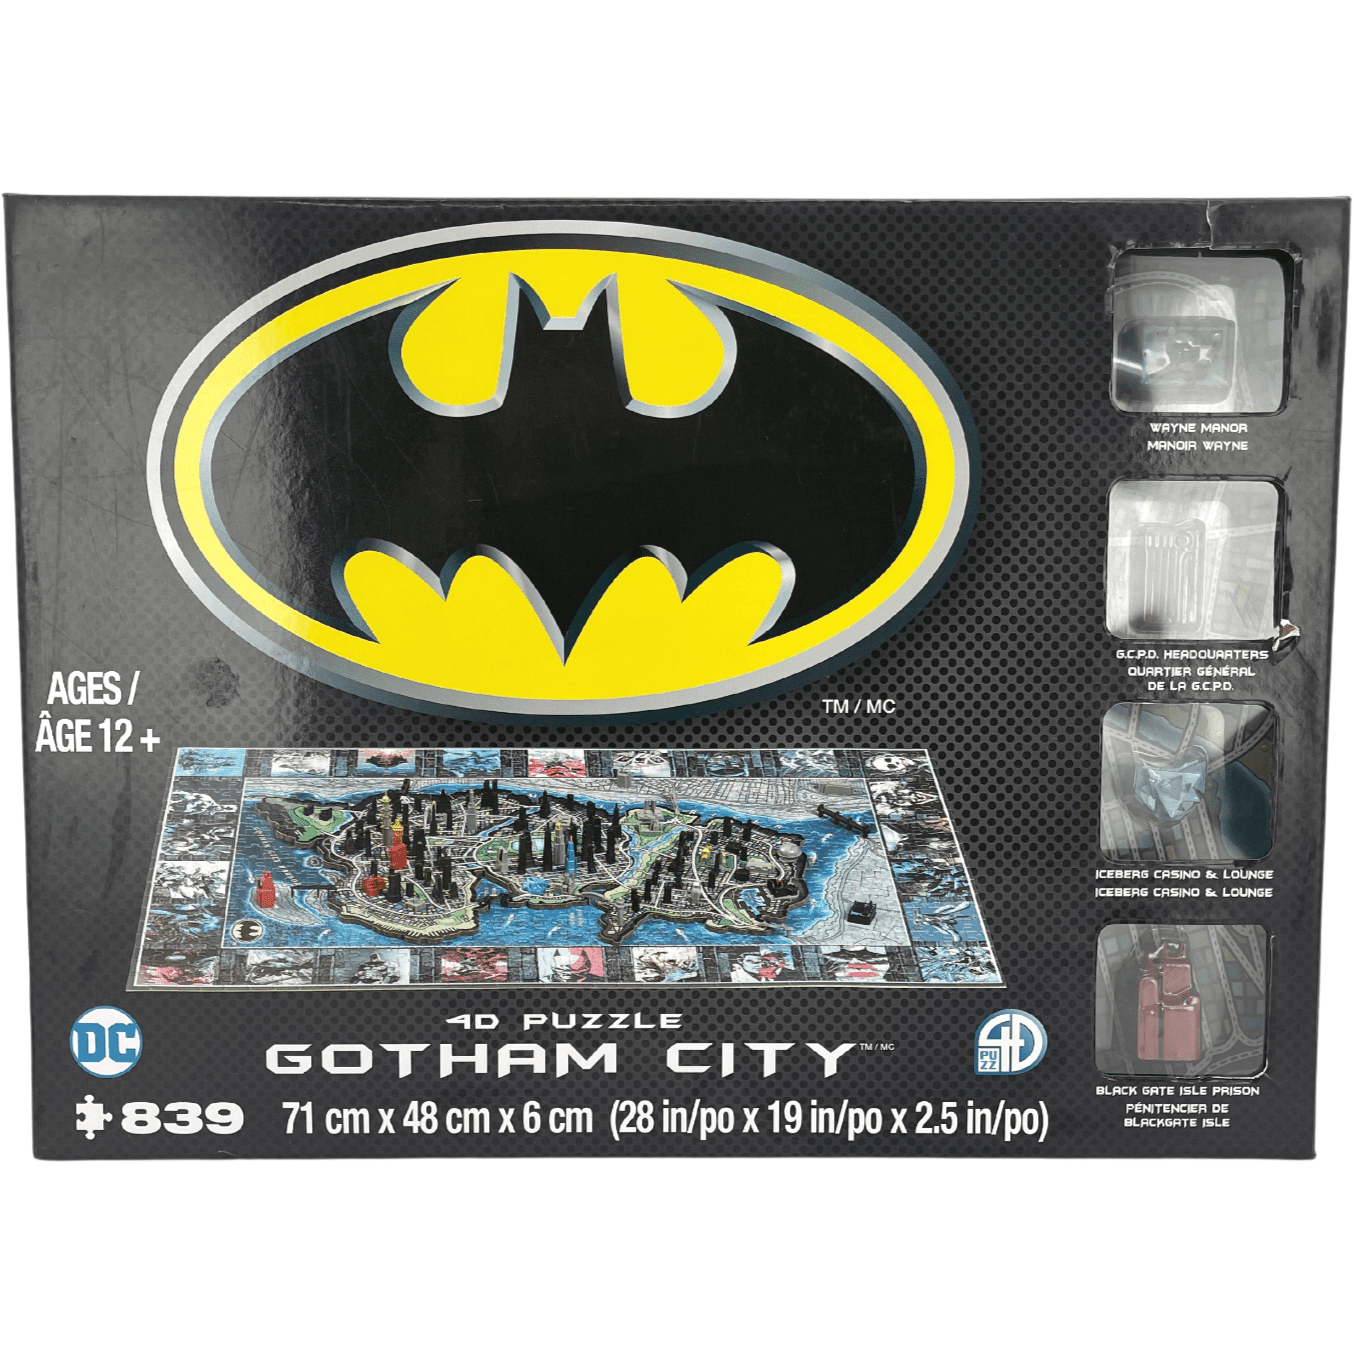 DC Comics Batman 4D Gotham City Puzzle / 839 Pieces **DEALS**